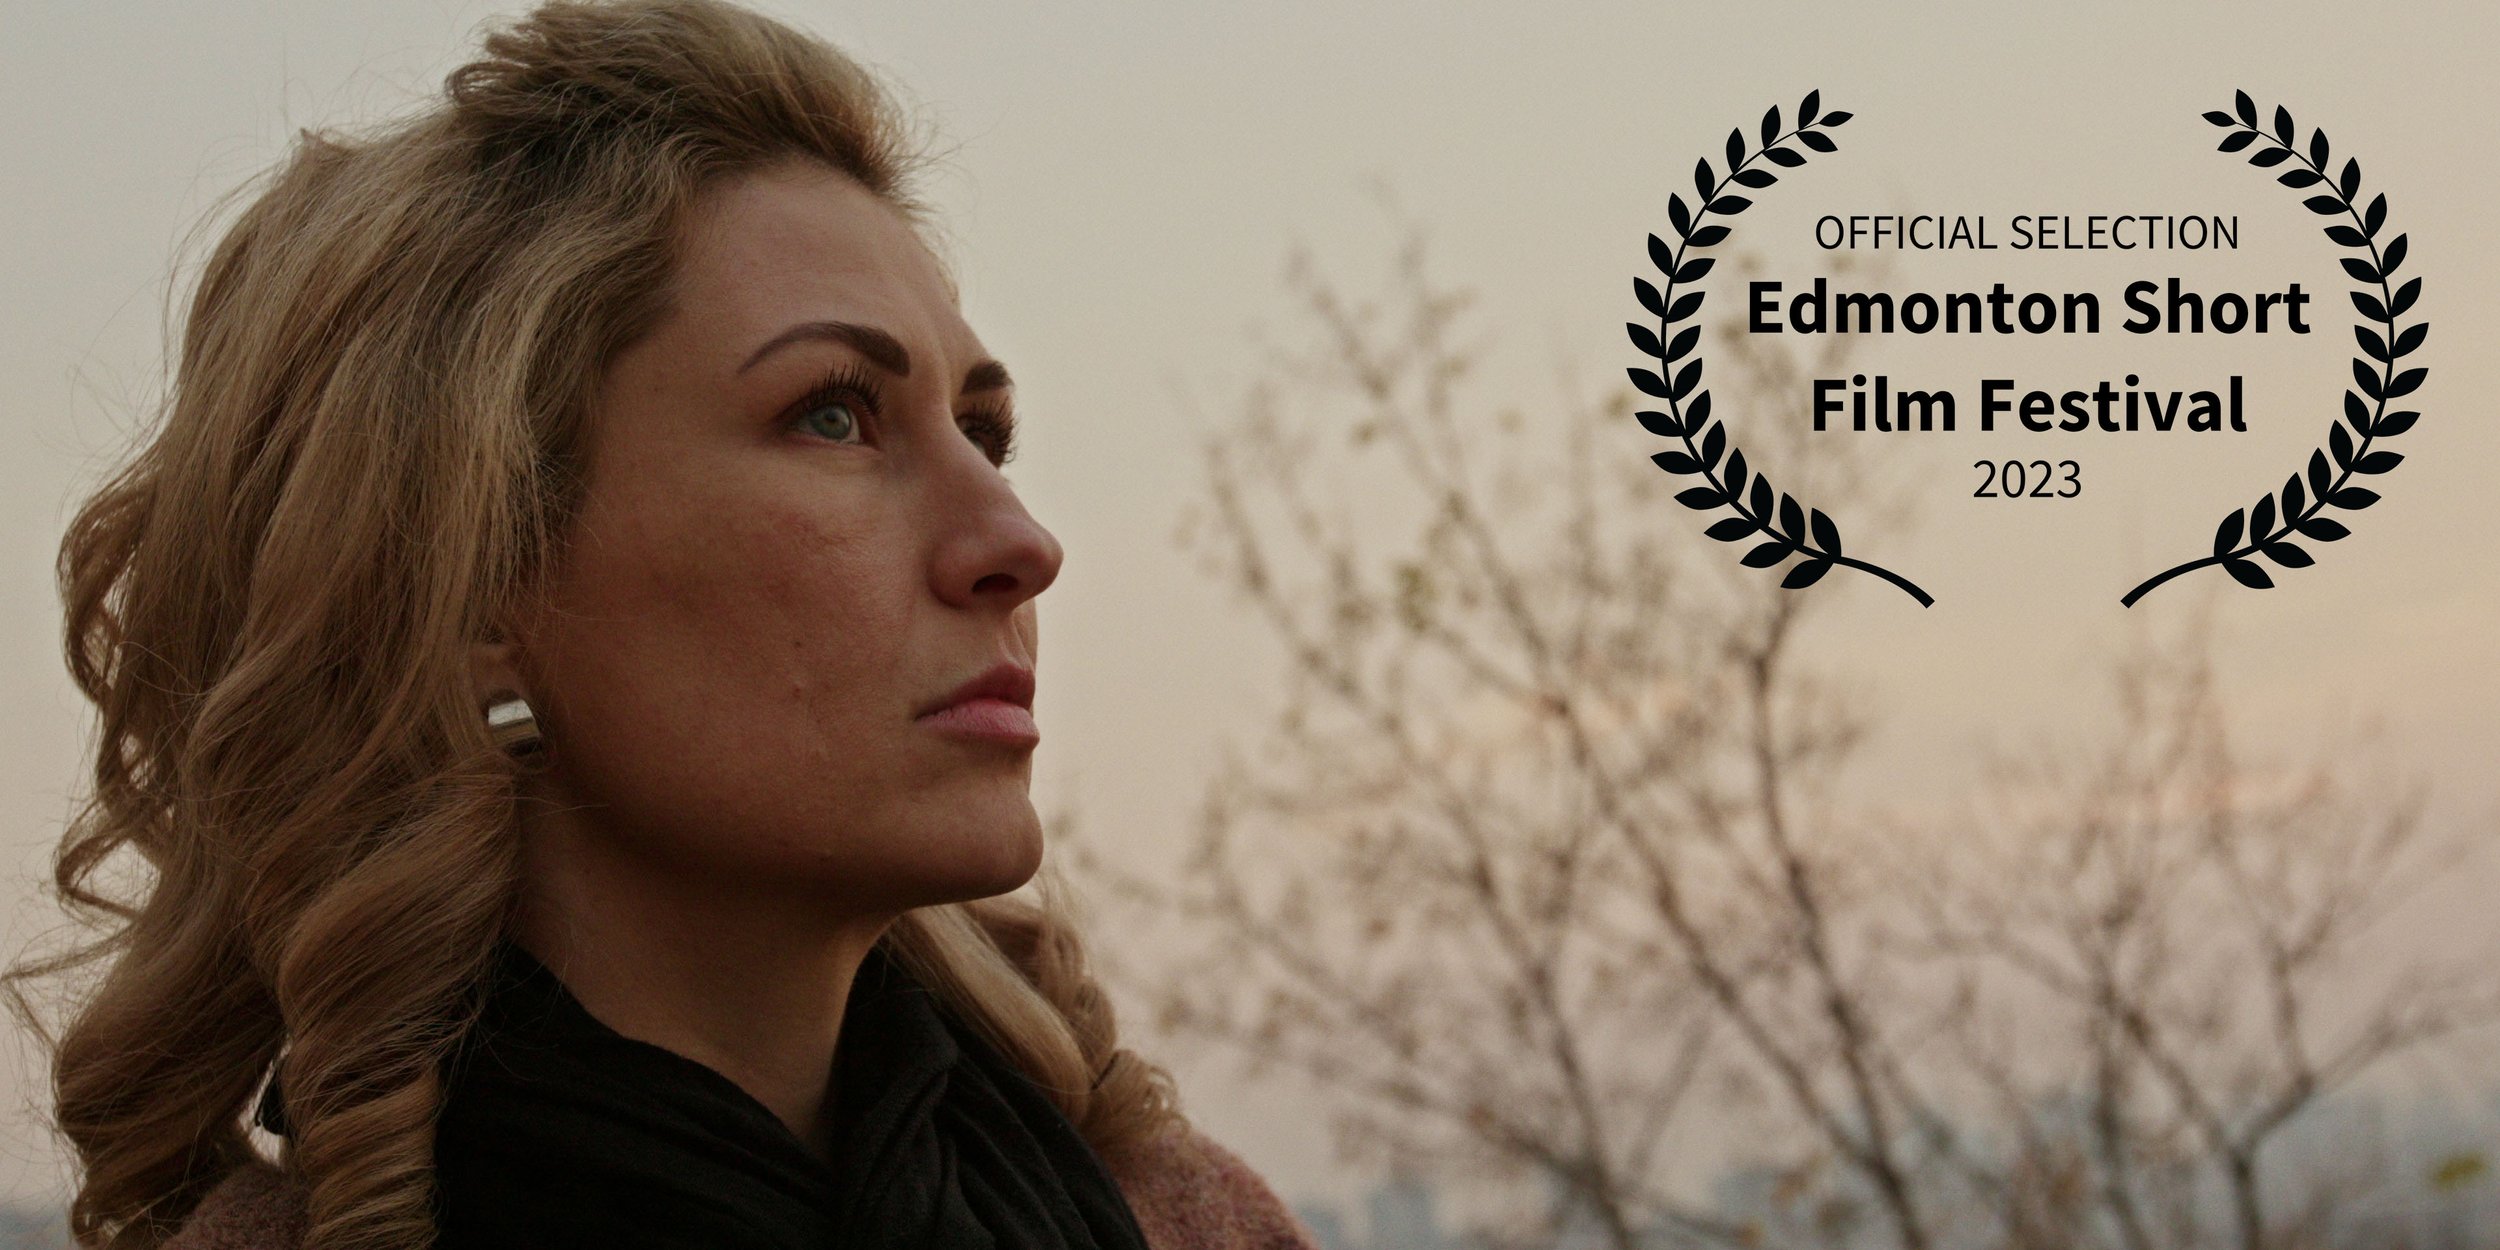 Edmonton Short Film Festival 2023